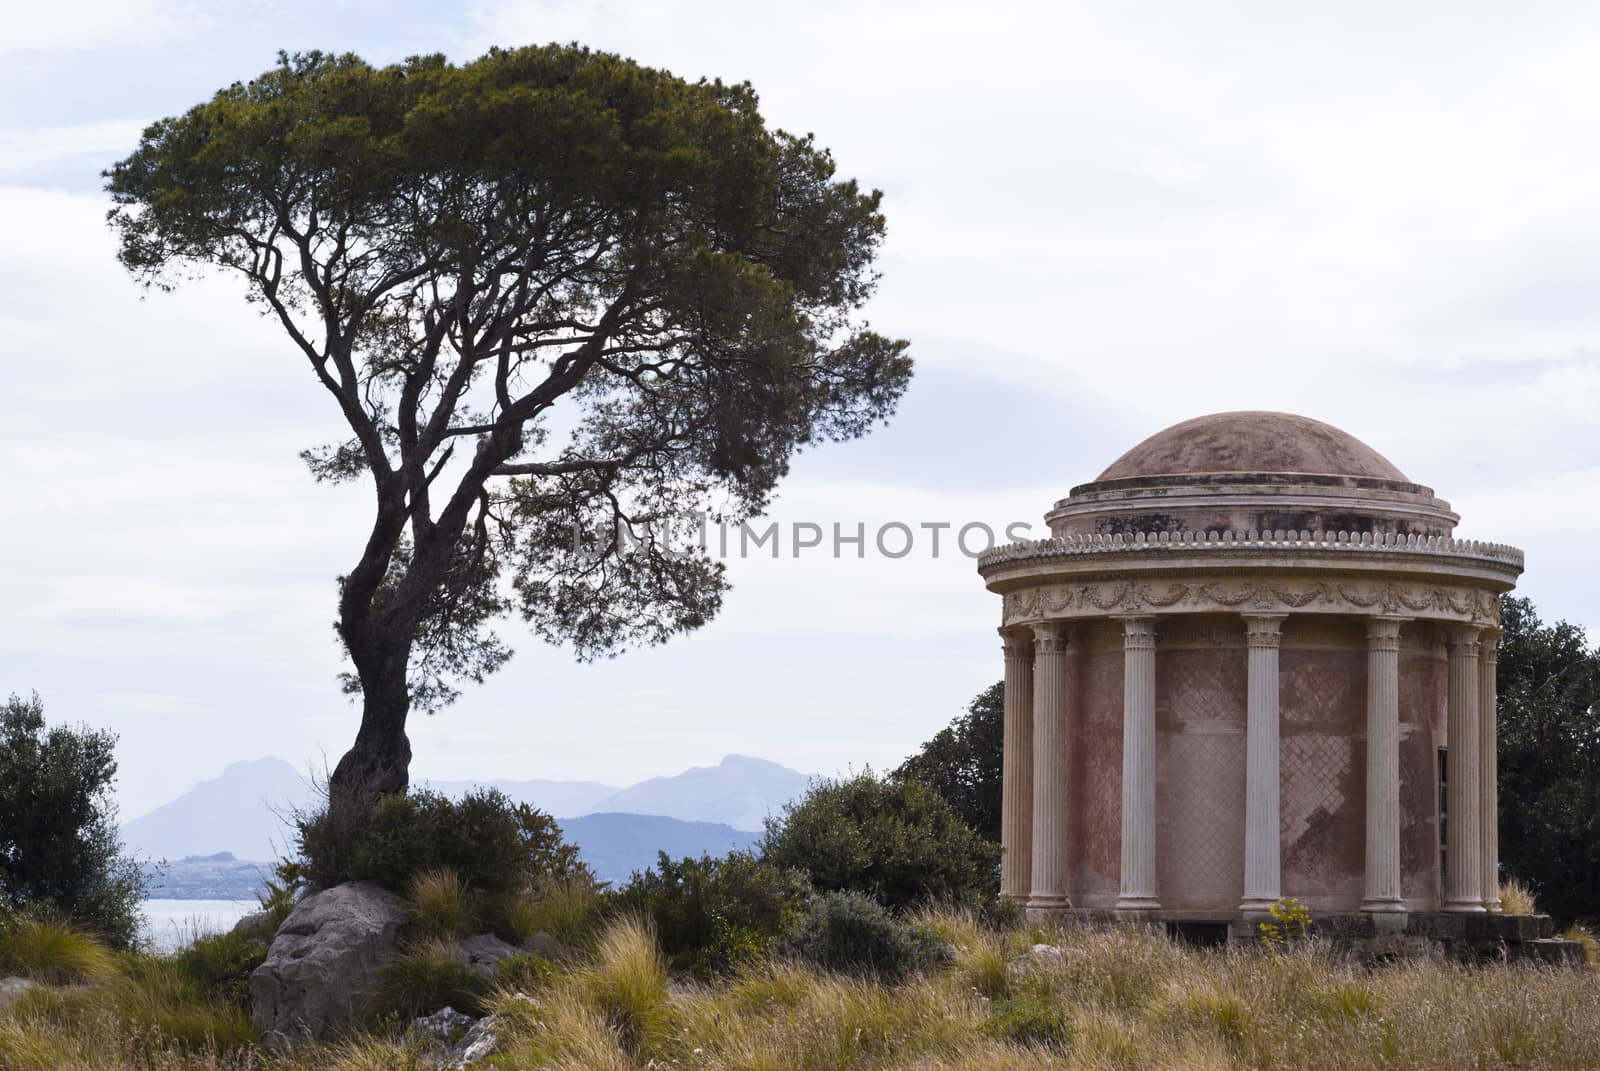 Temple in Palermo, Monte Pellegrino by gandolfocannatella